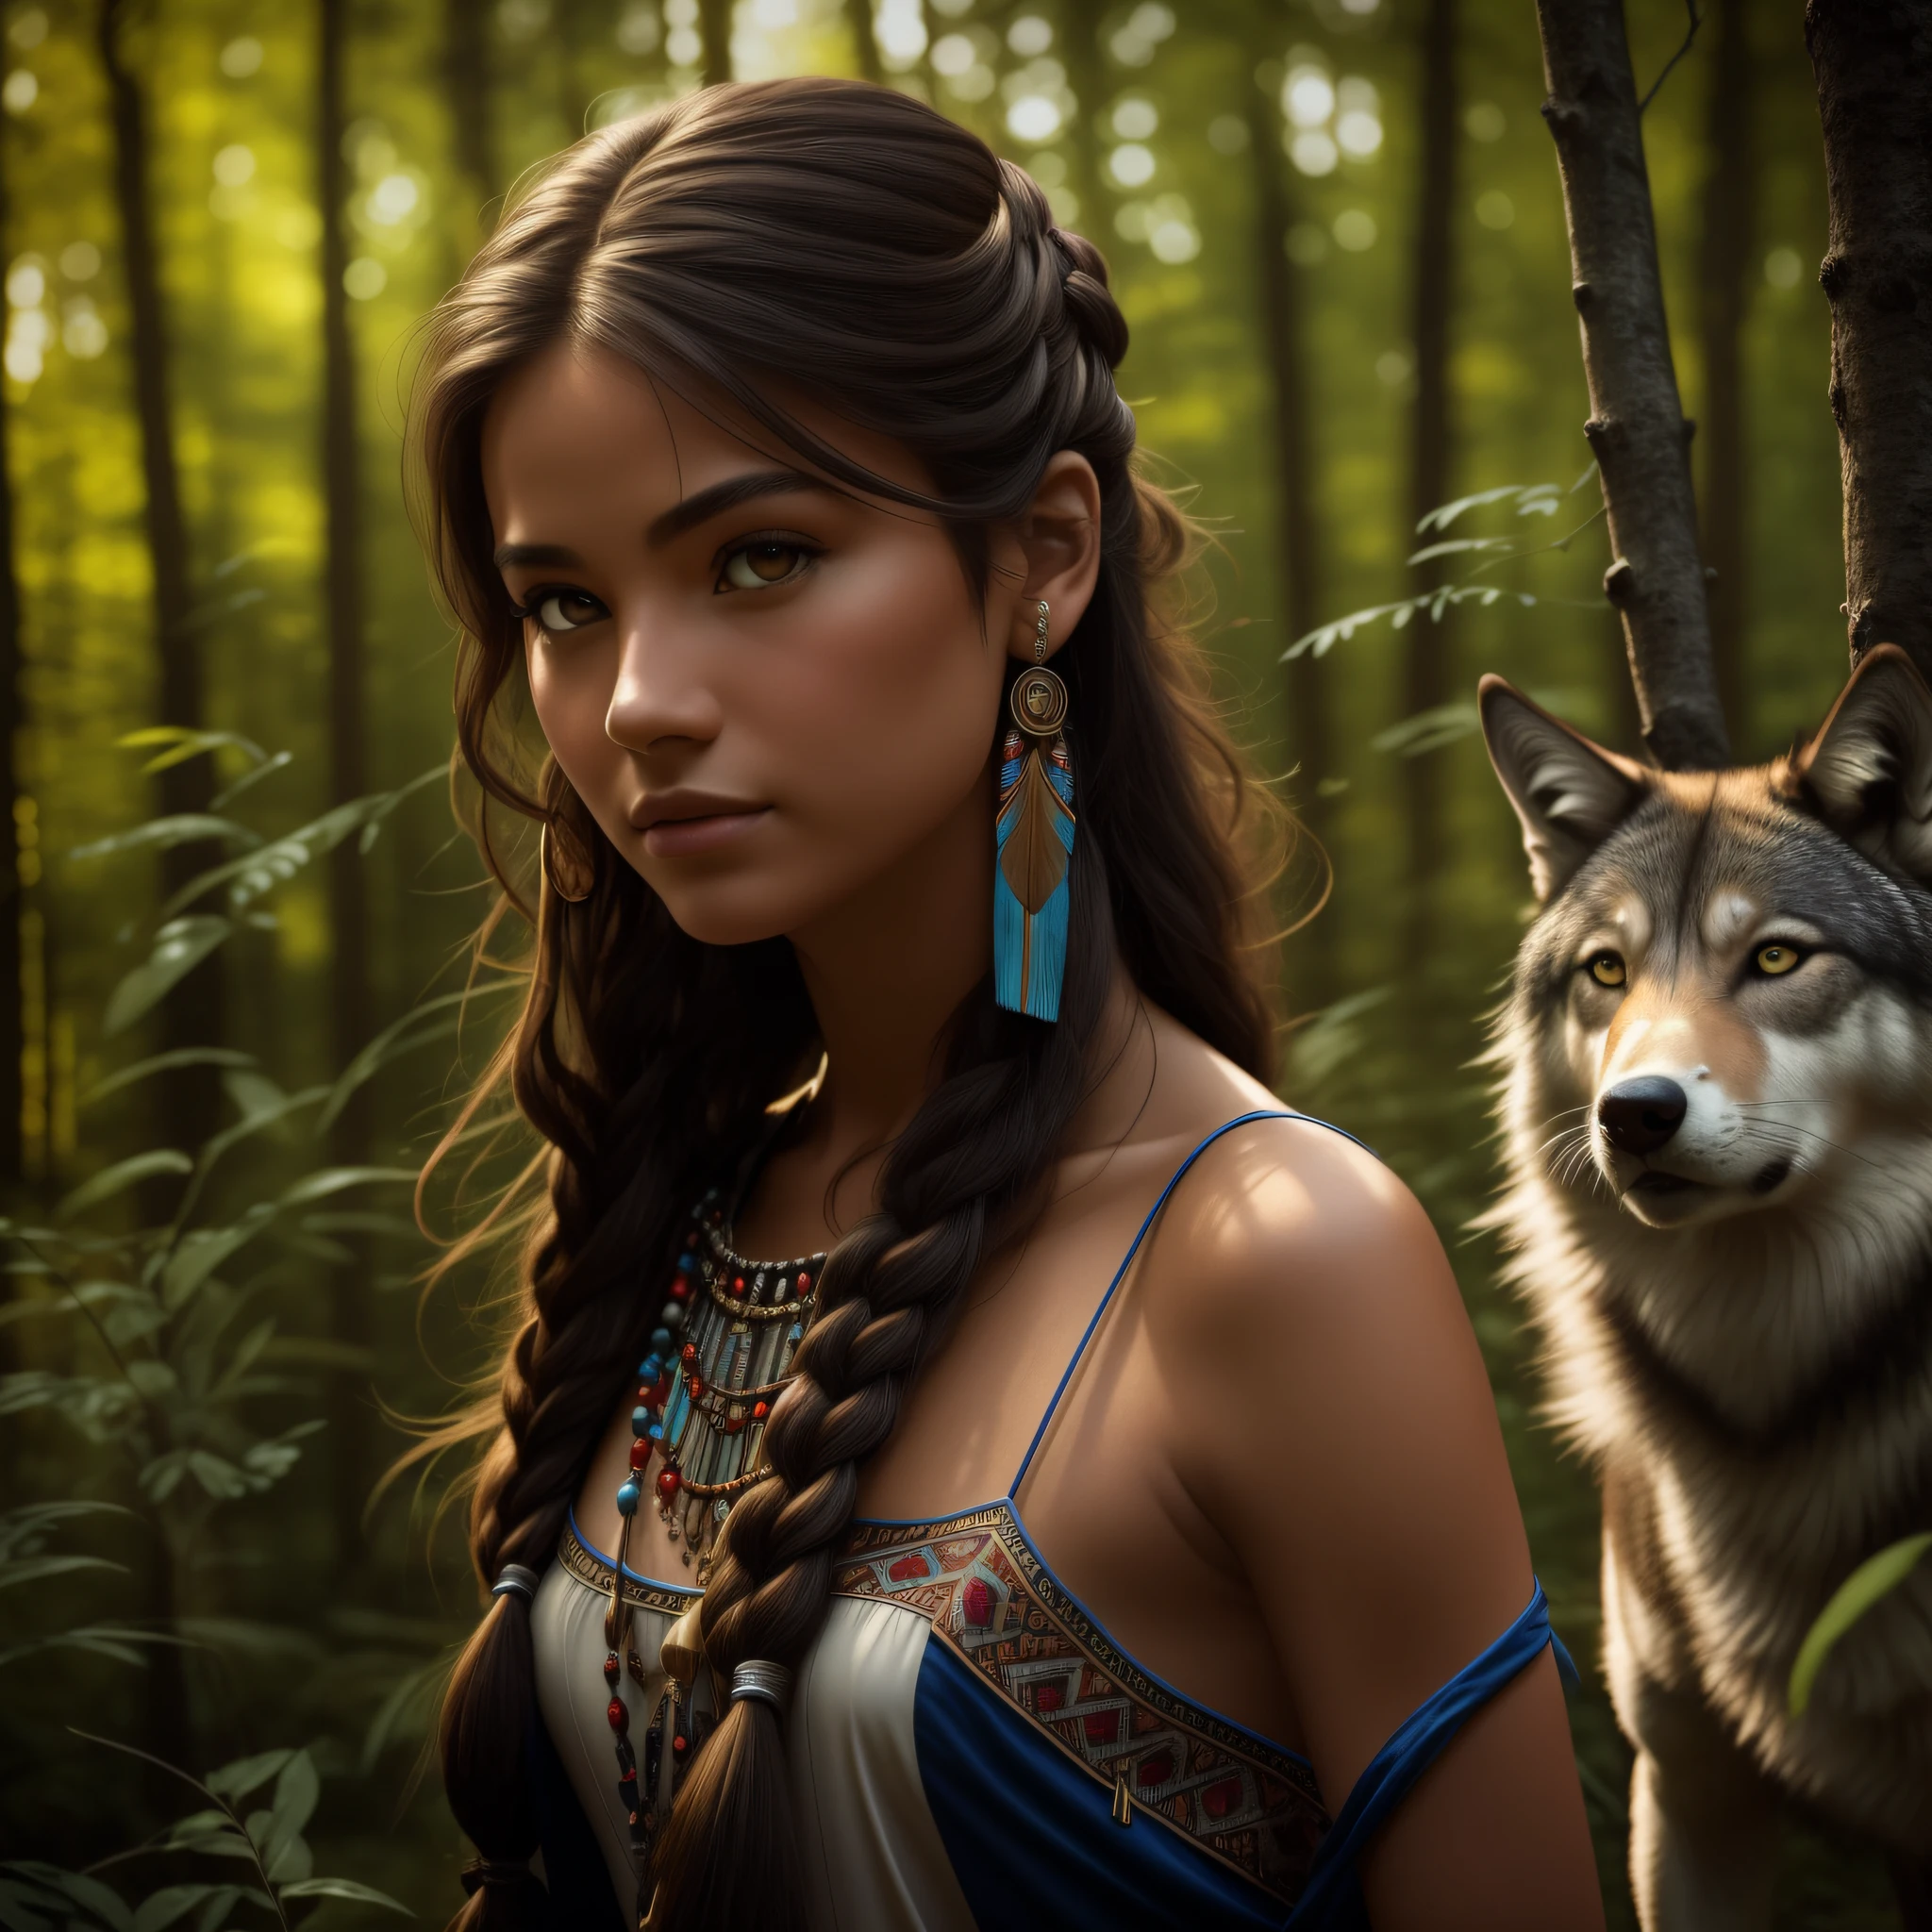 (최고의 품질, 걸작: 1.1), (실재론: 1.4),(걸작, 현실적인: 1.4), (극도의 정밀도: 1.2); (앞쪽: 1.3), 현실적인 portrait of a Native American girl with indigenous adornments with her ultra 현실적인 pet wolf in the forest, 부족의 드레스, 아주 긴 머리, 벌거벗은 어깨, 밤하늘, 갤럭시 글로우, 대양, 물, 머리 기울임, 바람, 구름, 자연광, 집 밖의, 홀로, 부서지다, 영화 같은 빛, 초고해상도, 8k어, 필름비즈,  완벽한 해부학, Delicate and 연약한 skin, 최고의 그림자, 연약한, 날것의, 높은 해상도, 여자 사냥꾼, 밤, 보름달 밝기.